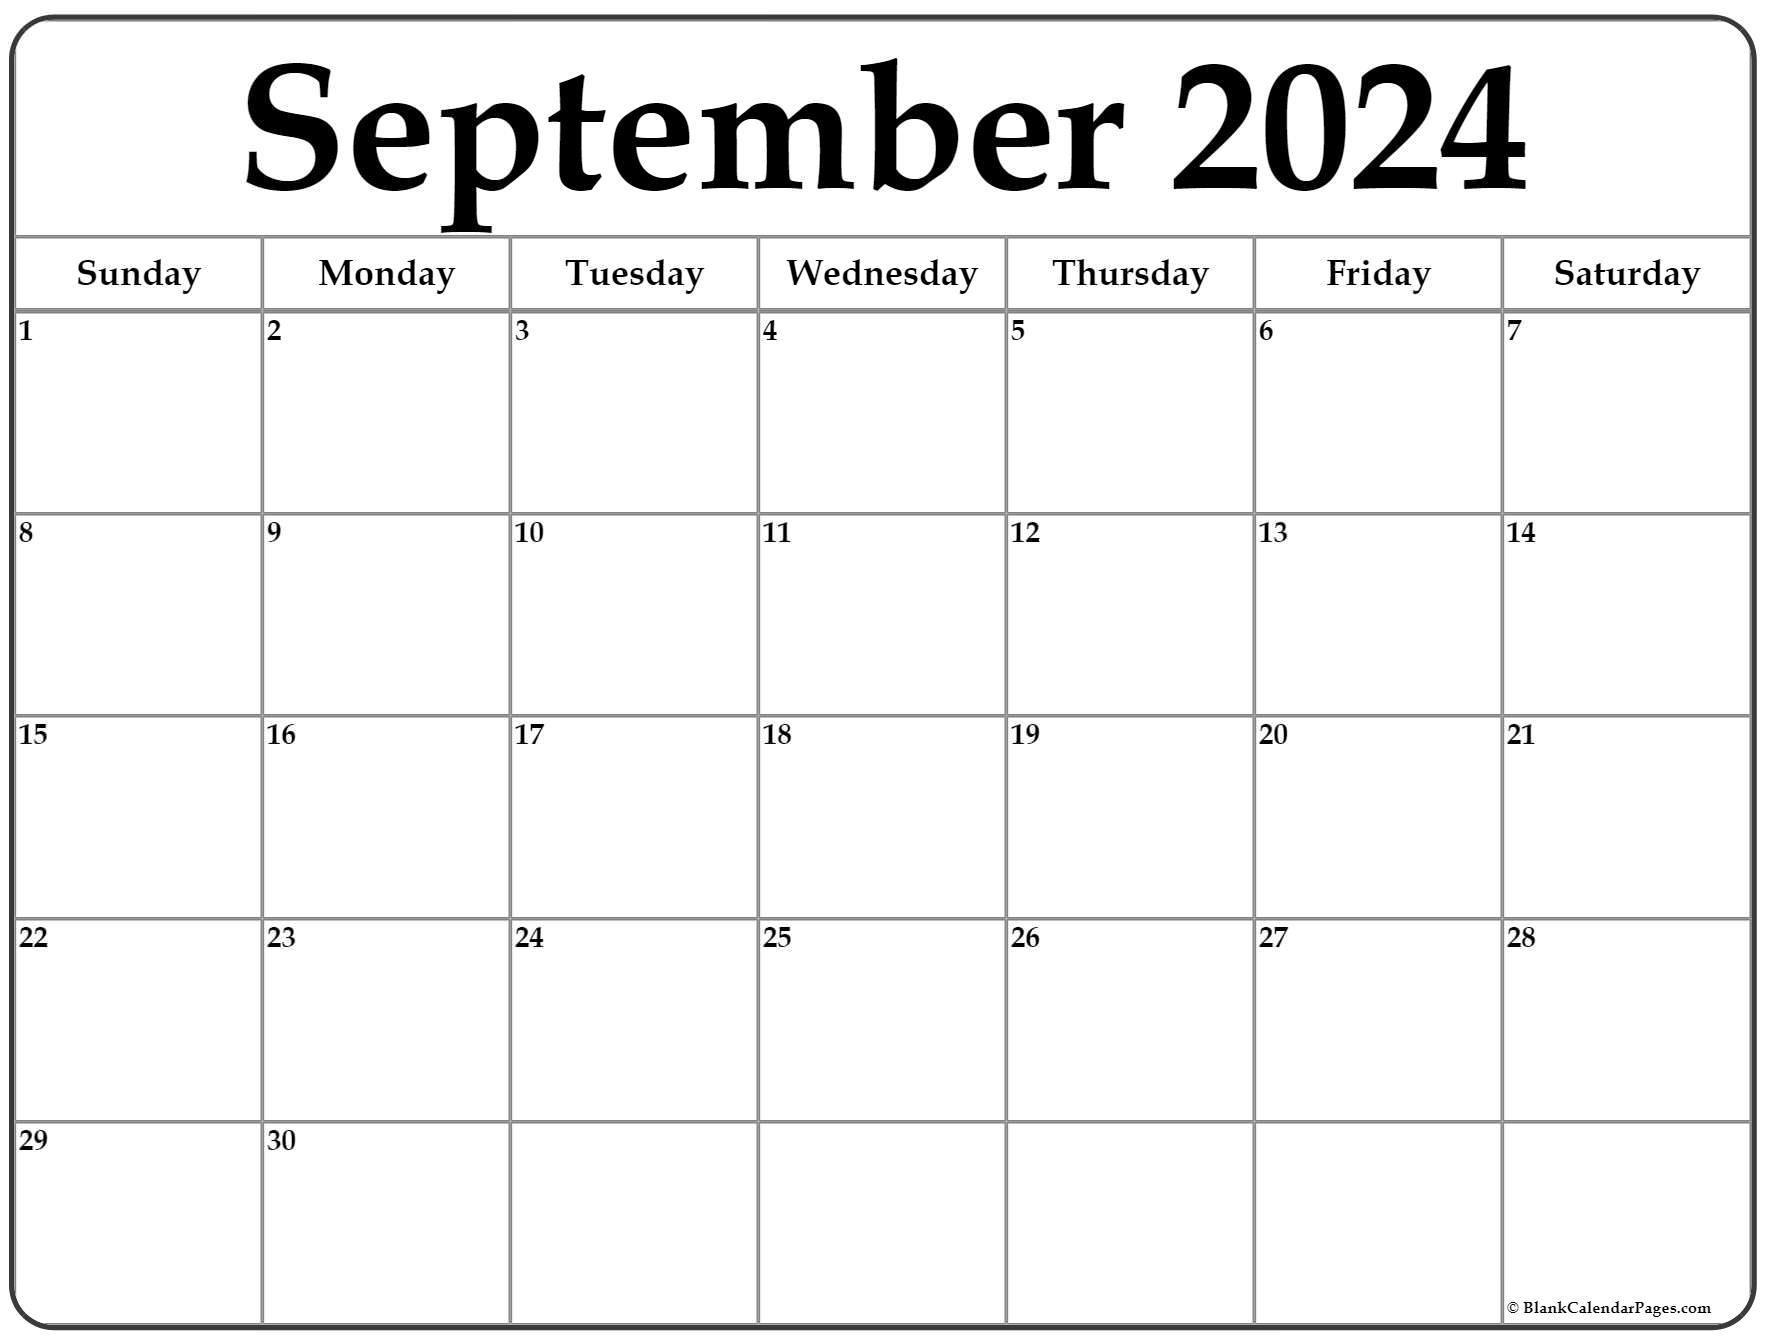 September 2022 Calendar Pdf September 2022 Calendar | Free Printable Calendar Templates